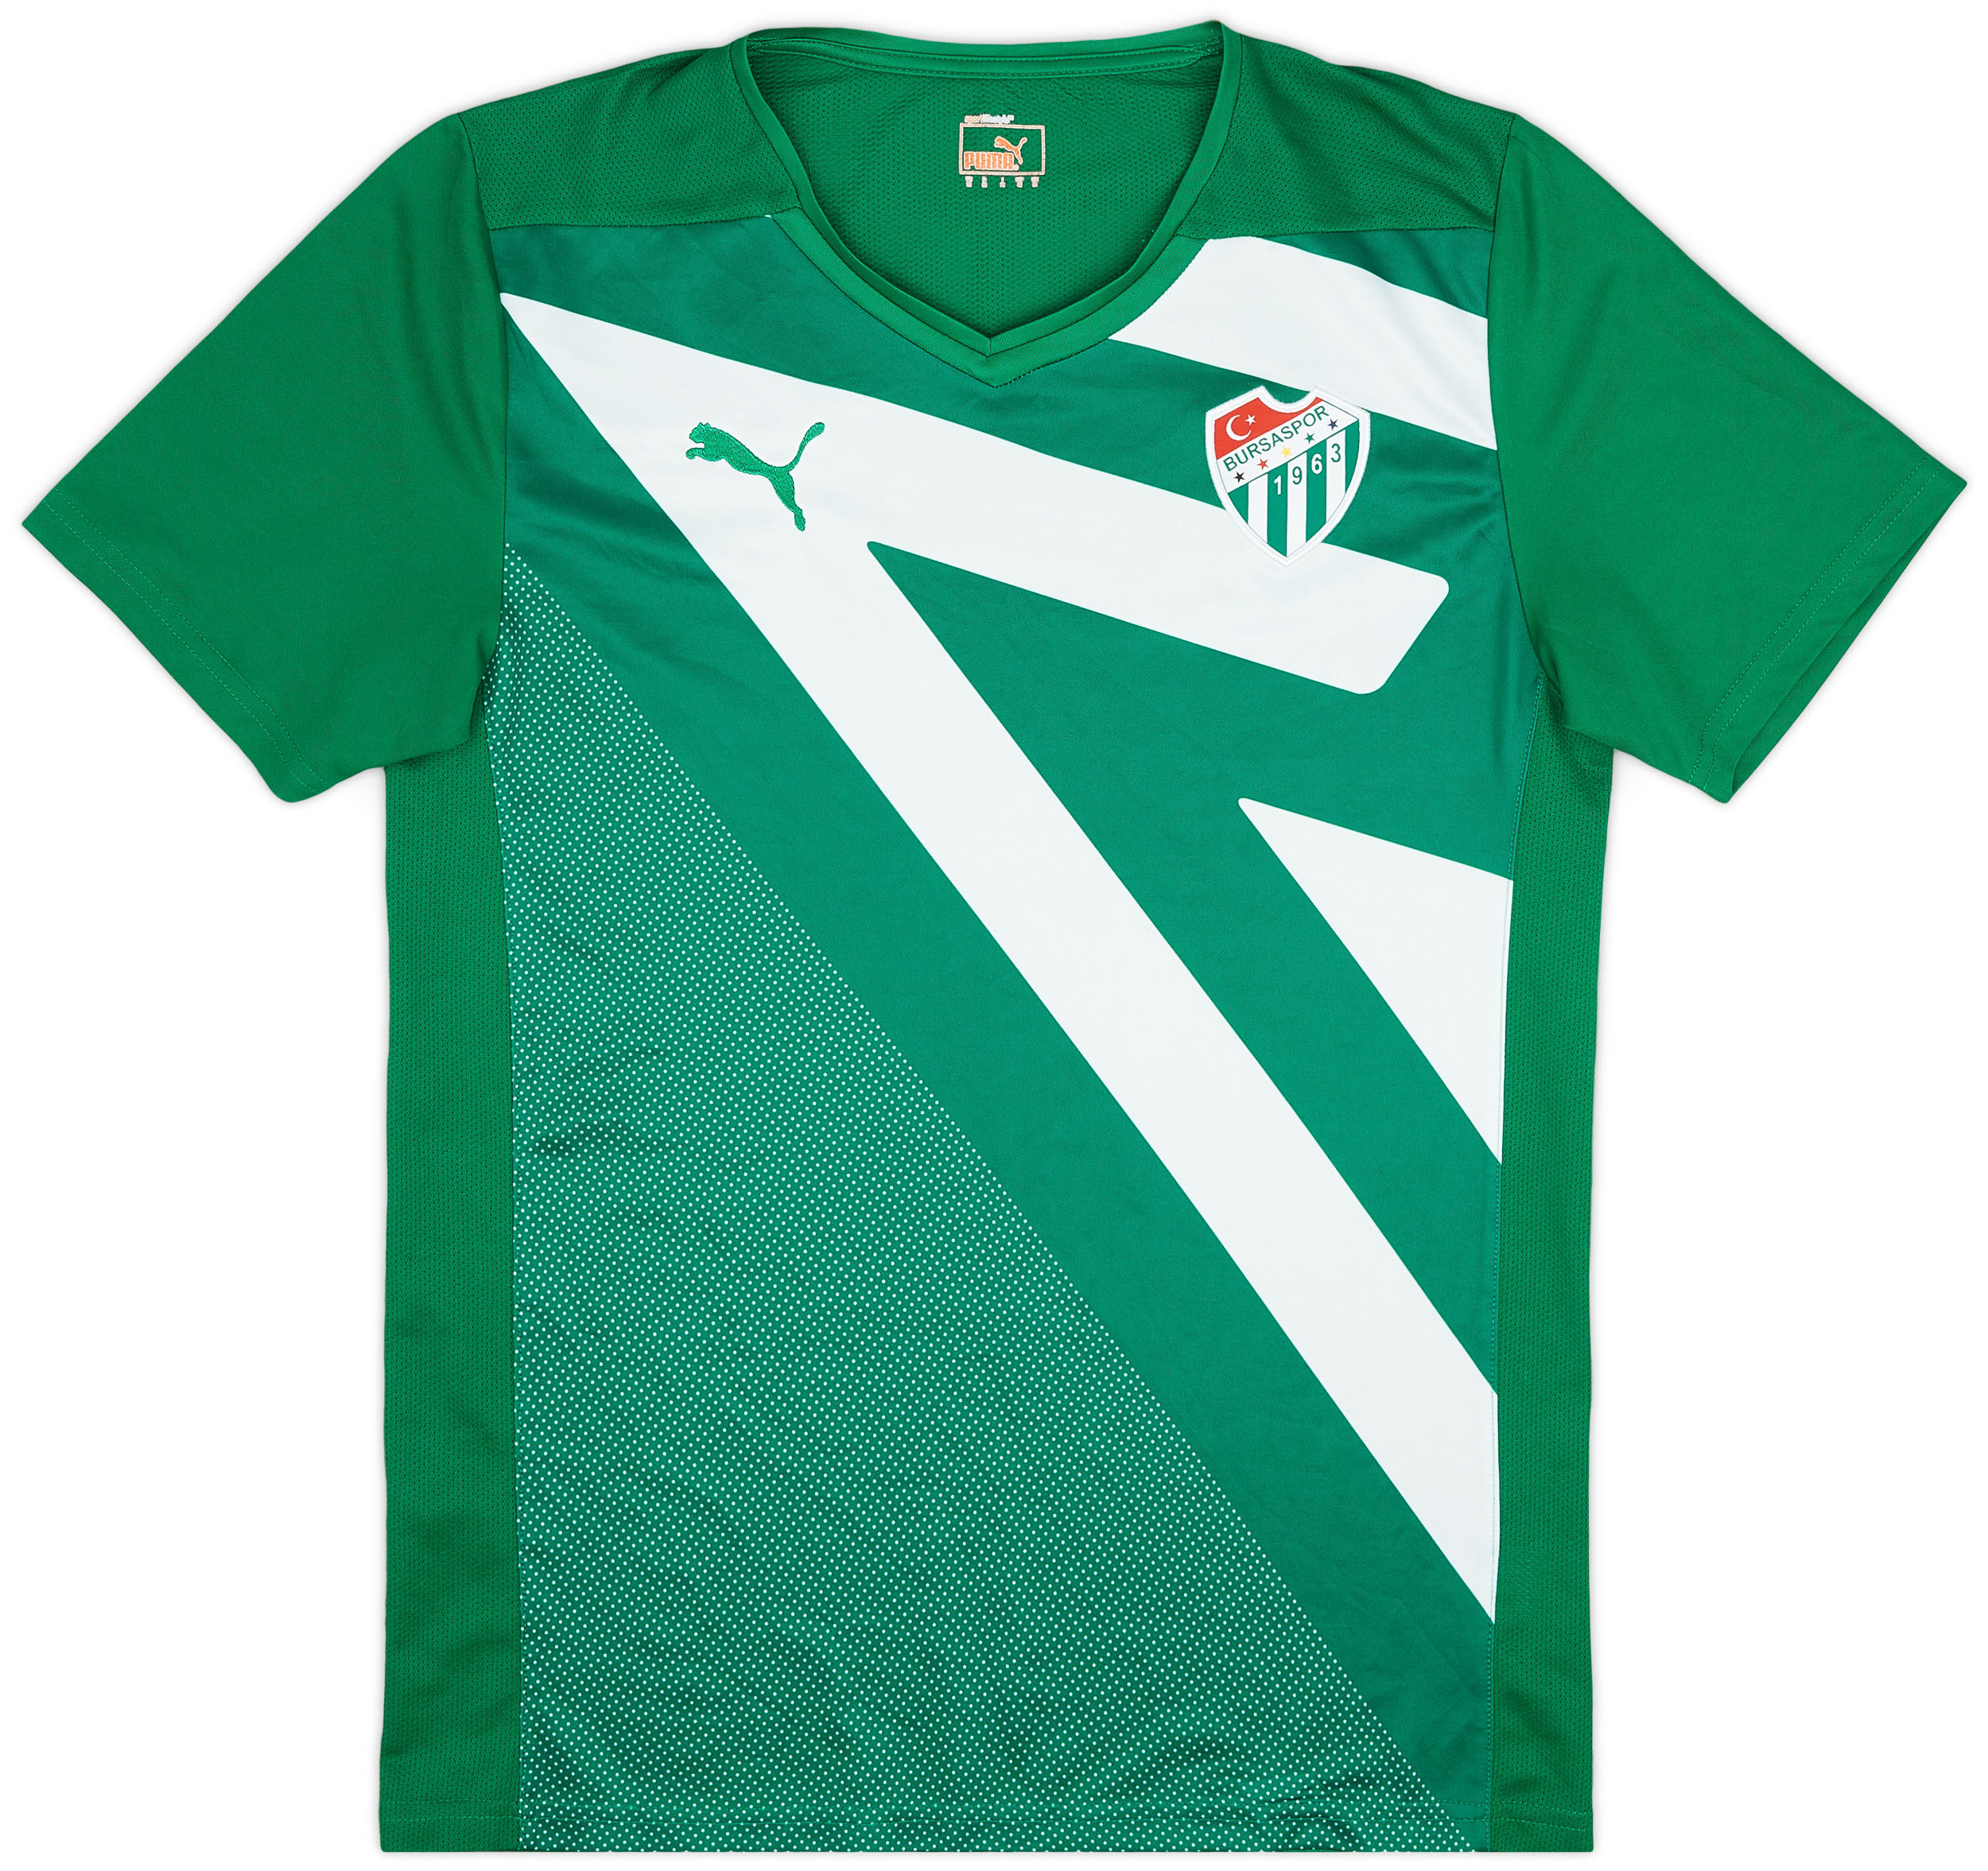 Bursaspor  Third shirt (Original)